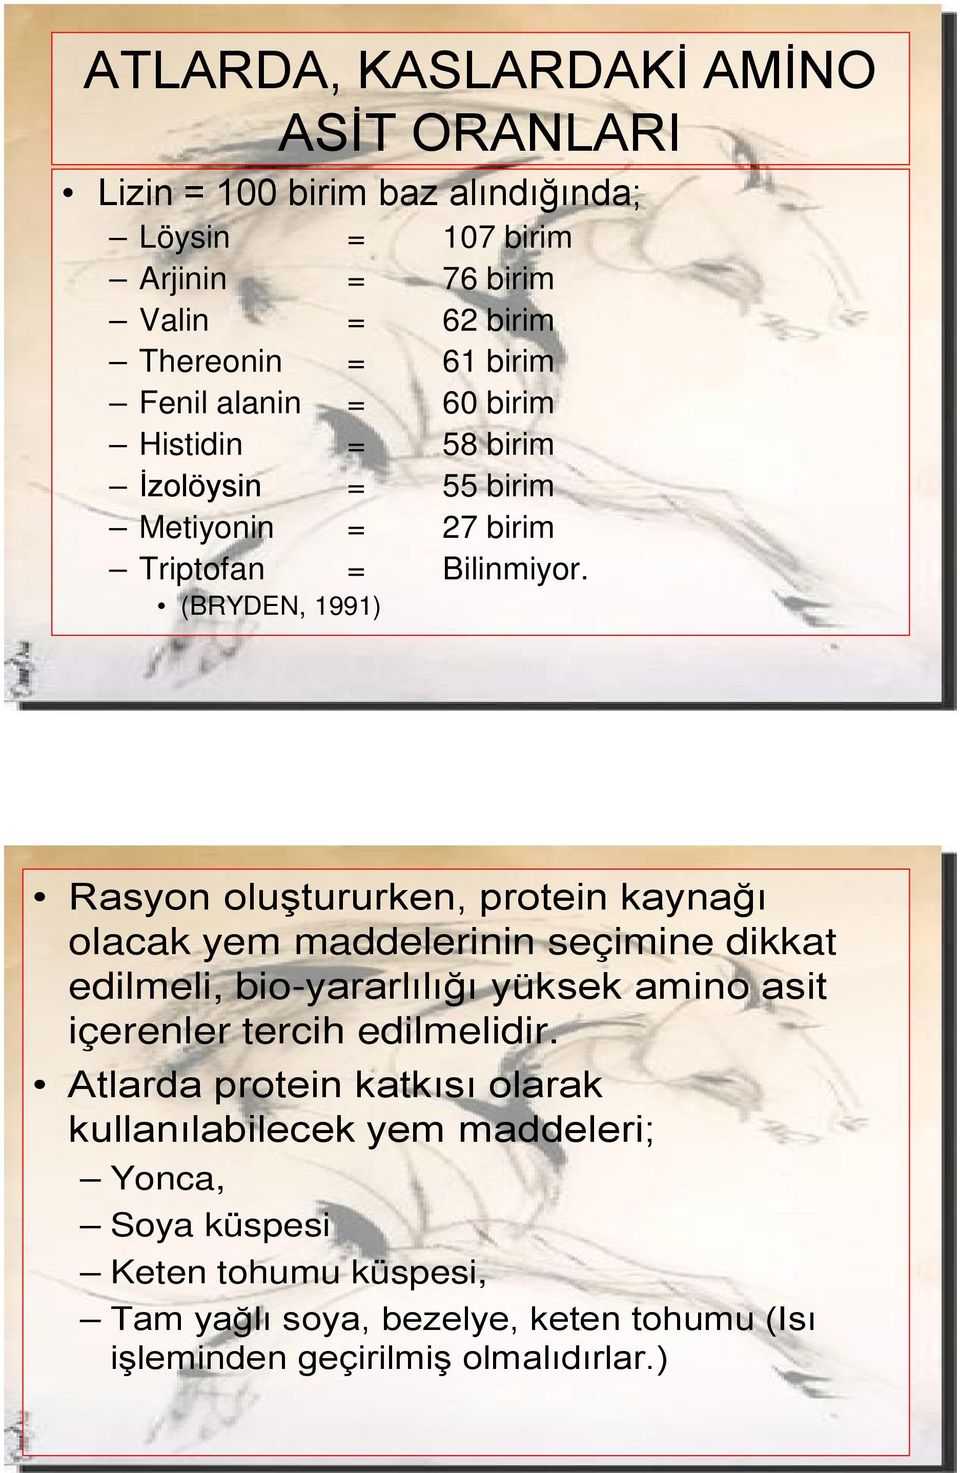 (BRYDEN, 1991) Rasyon oluştururken, protein kaynağı olacak yem maddelerinin seçimine dikkat edilmeli, bio-yararlılığı yüksek amino asit içerenler tercih